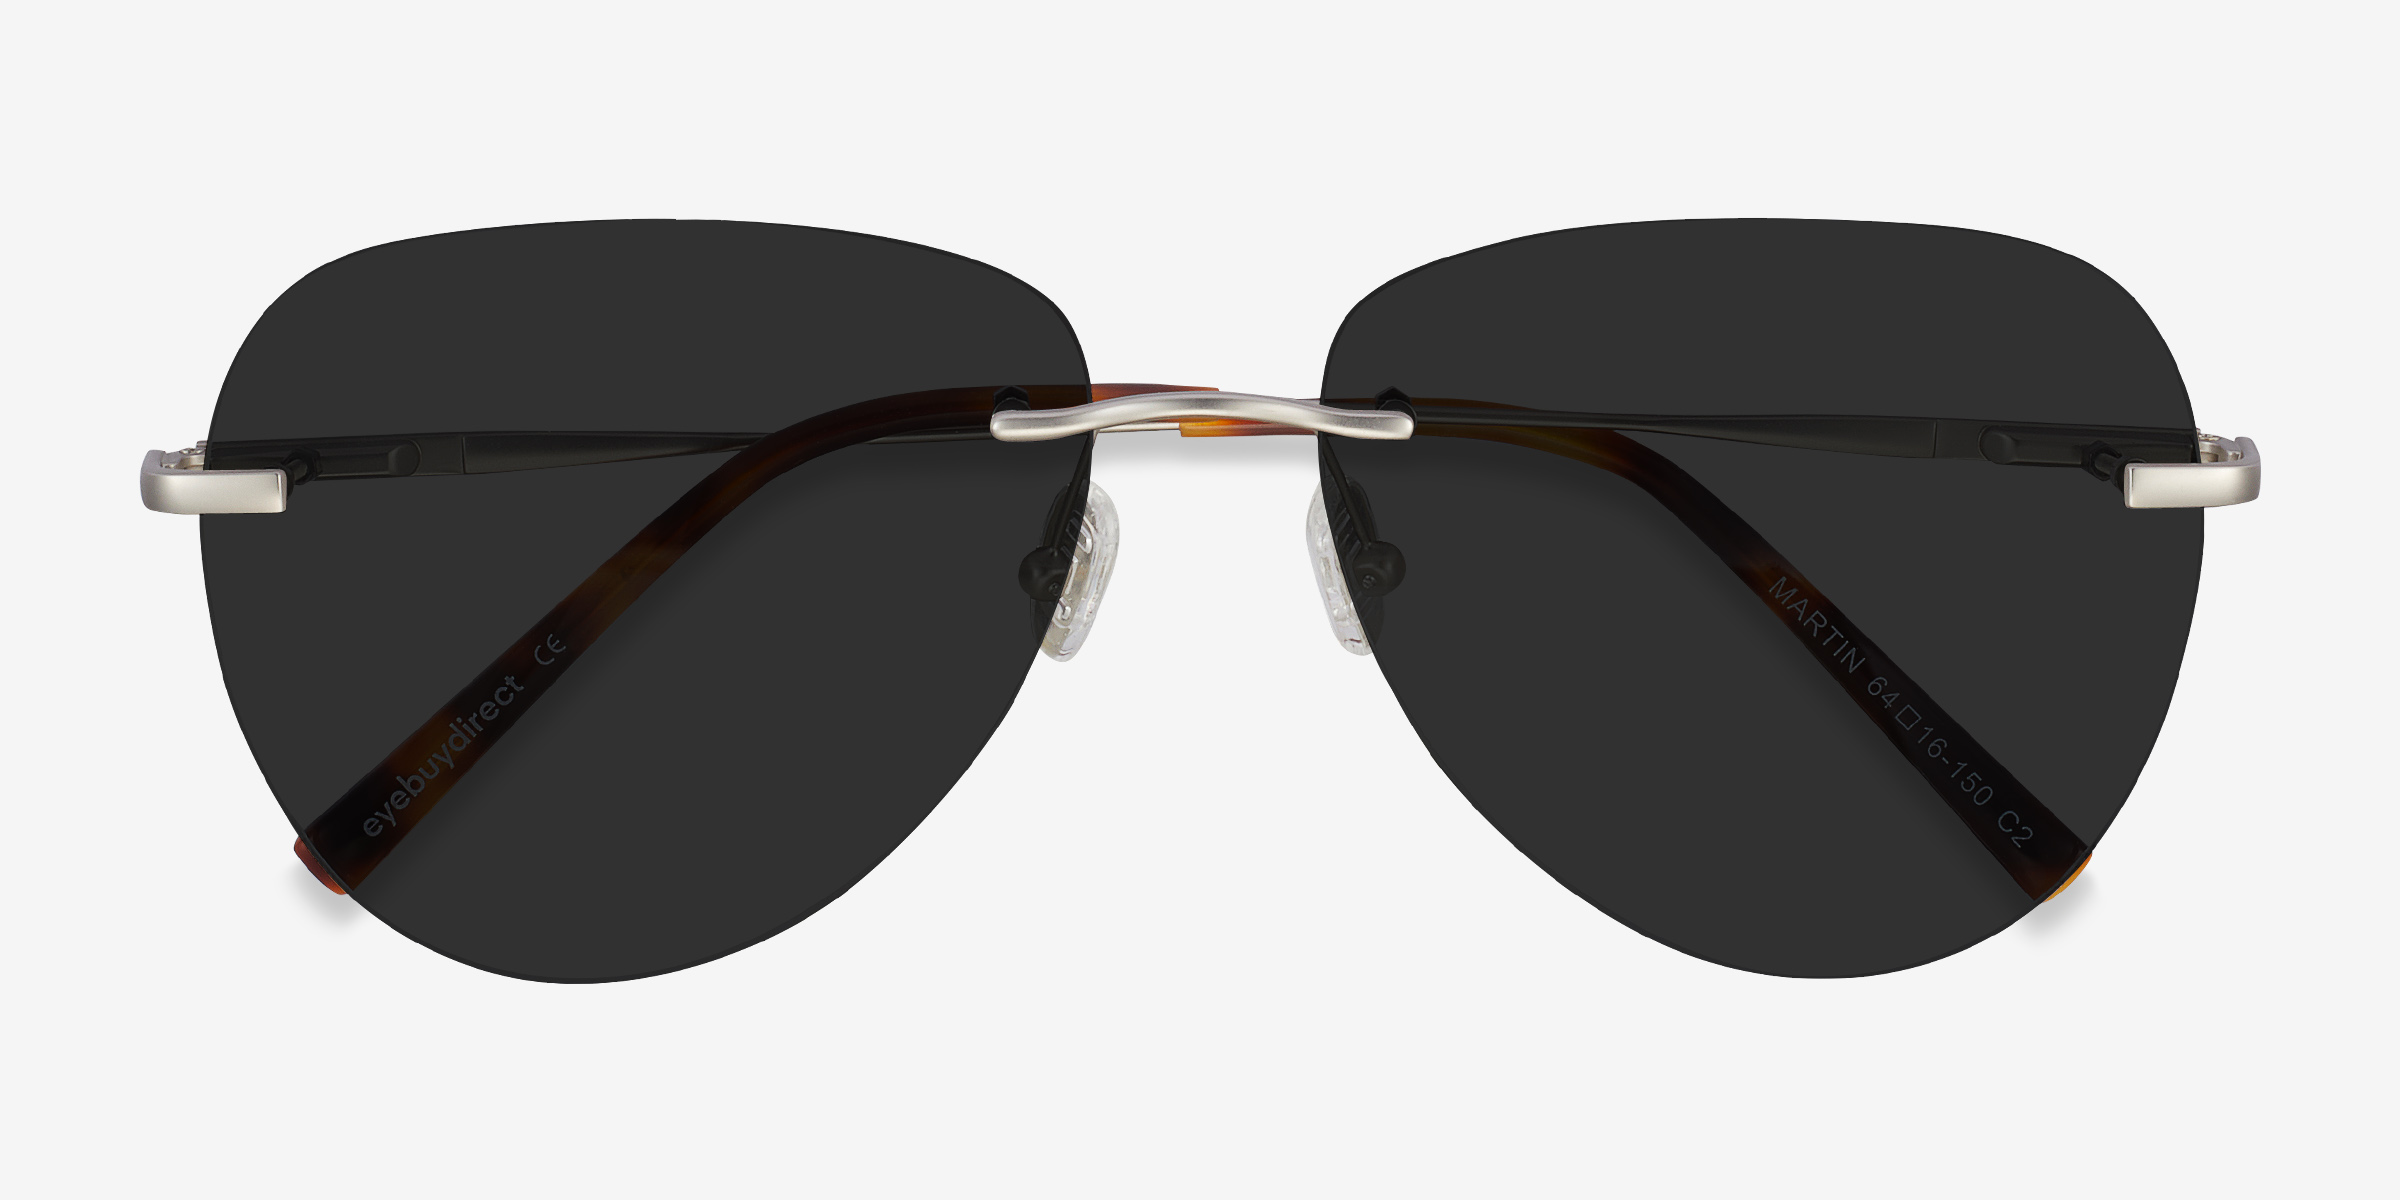 Martin - Aviator Matte Silver Frame Sunglasses For Men | Eyebuydirect